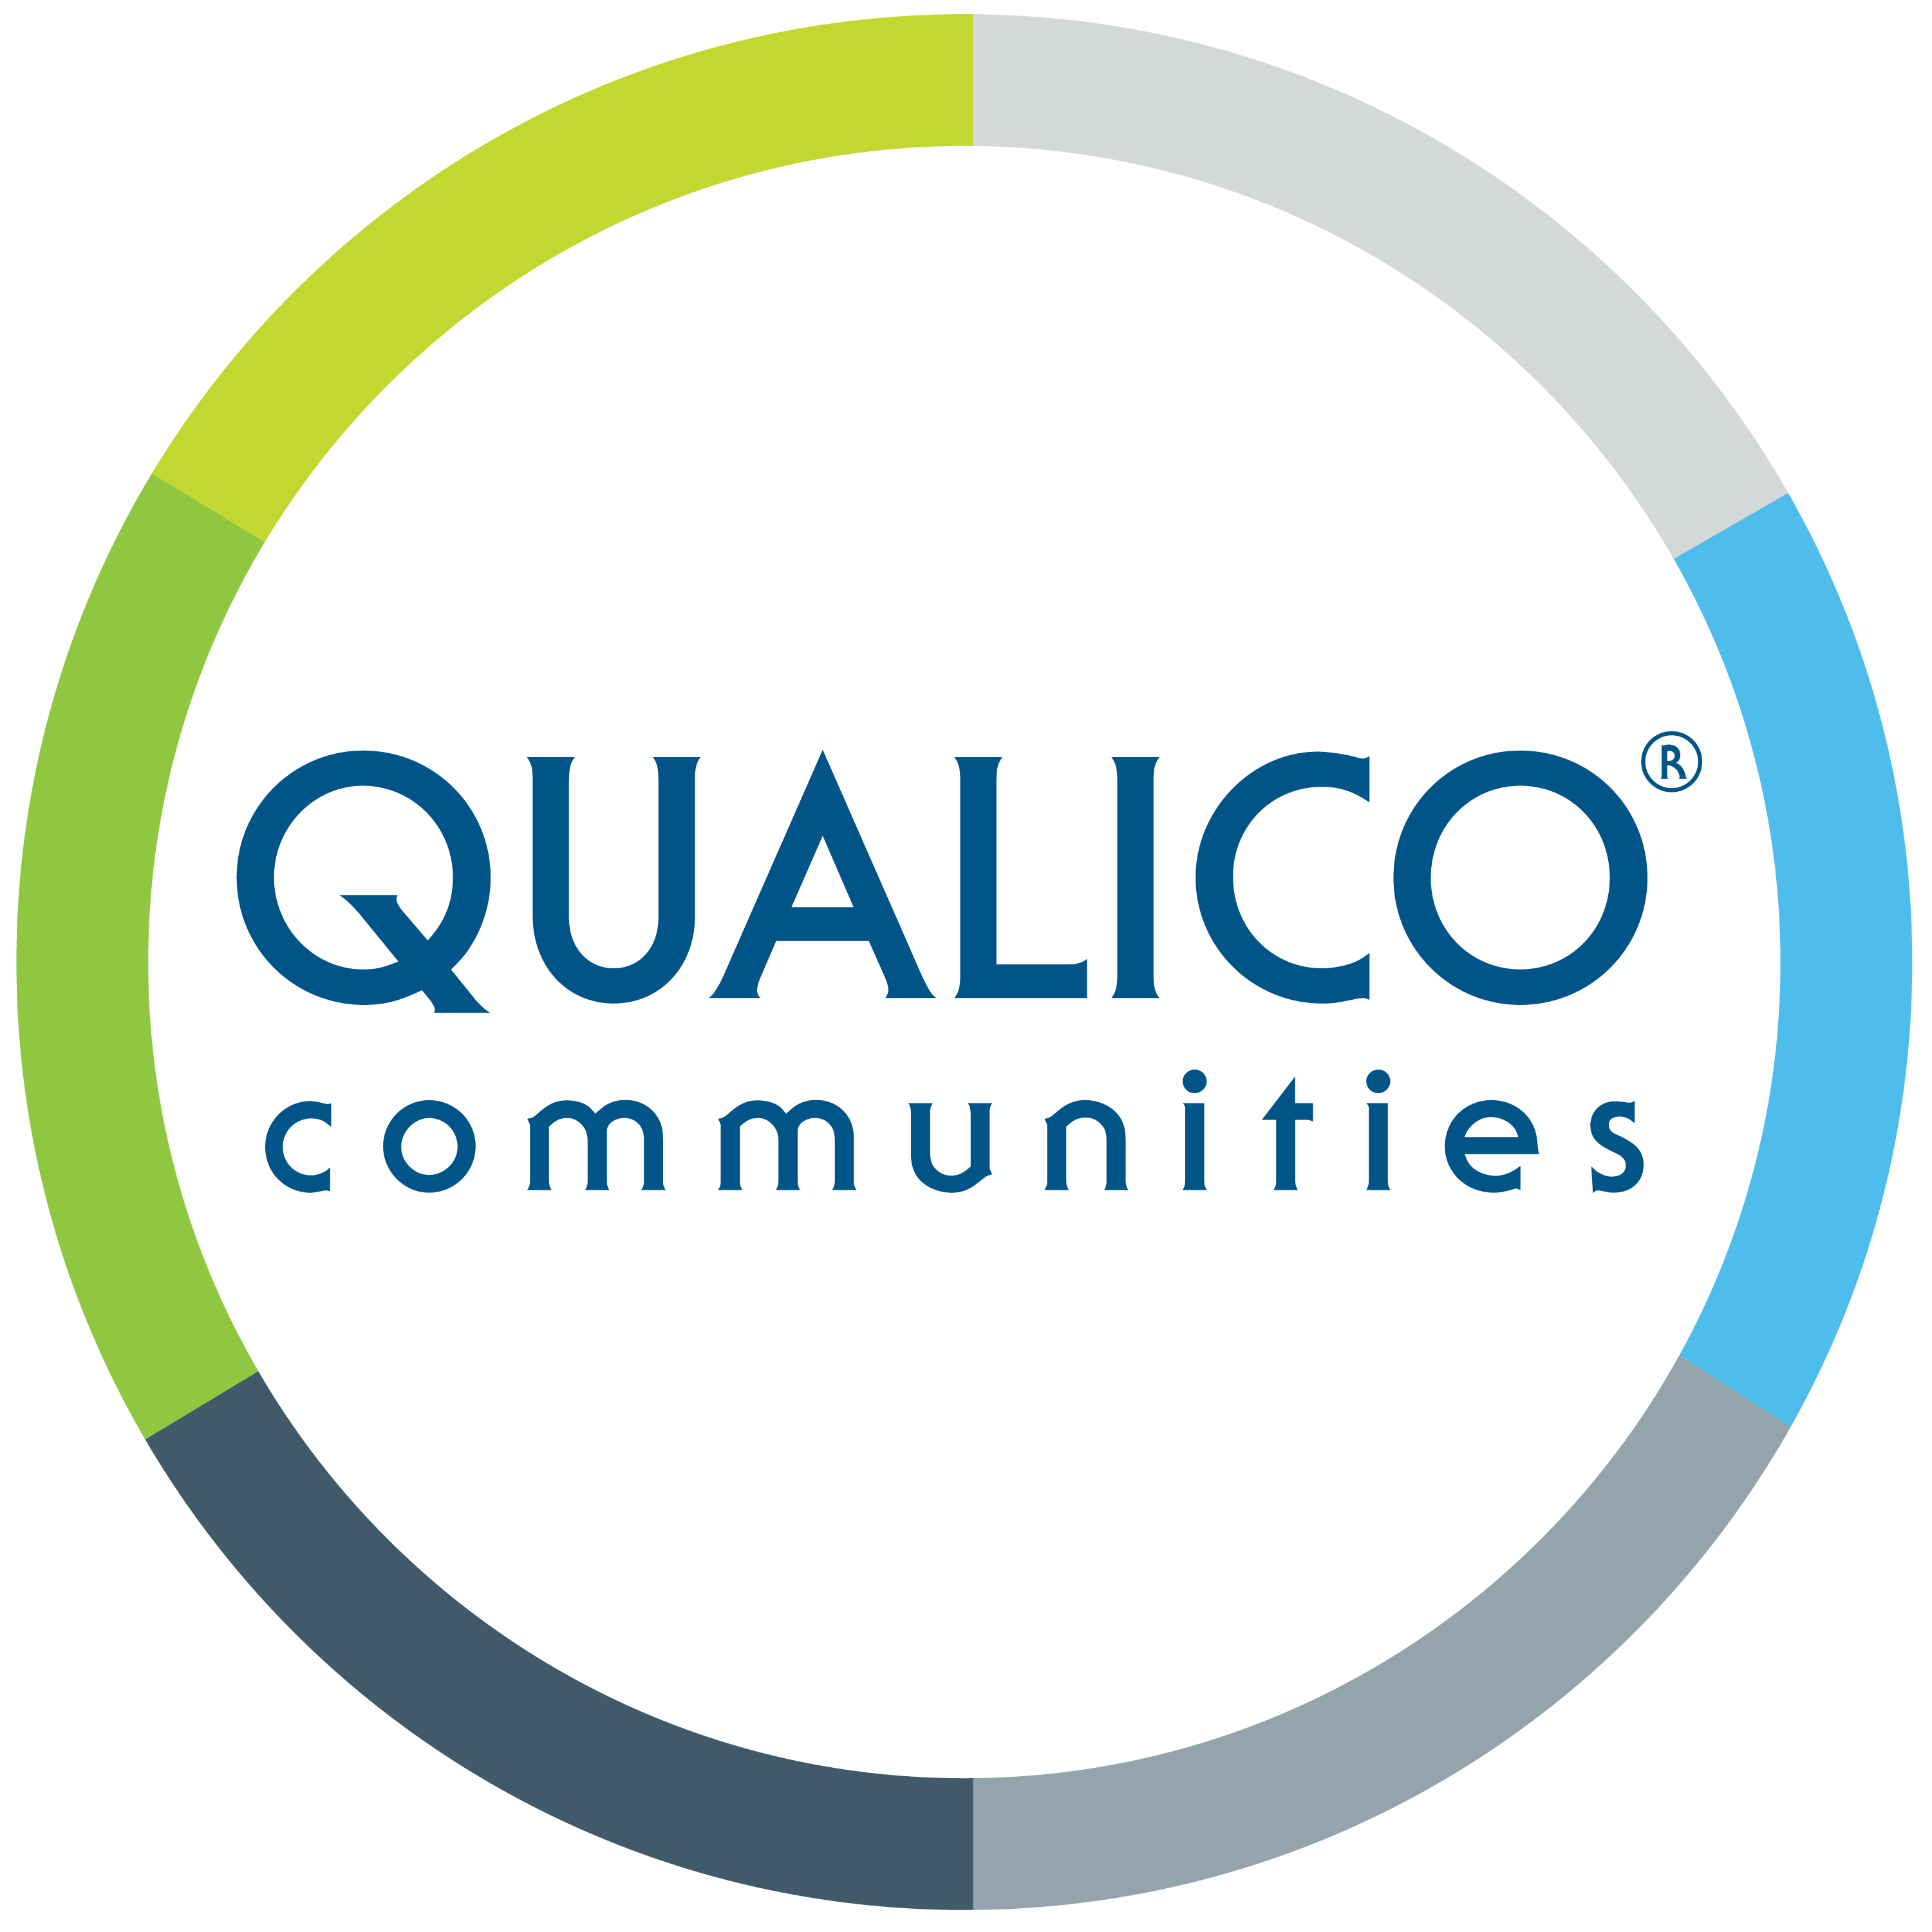 Qualico Communities